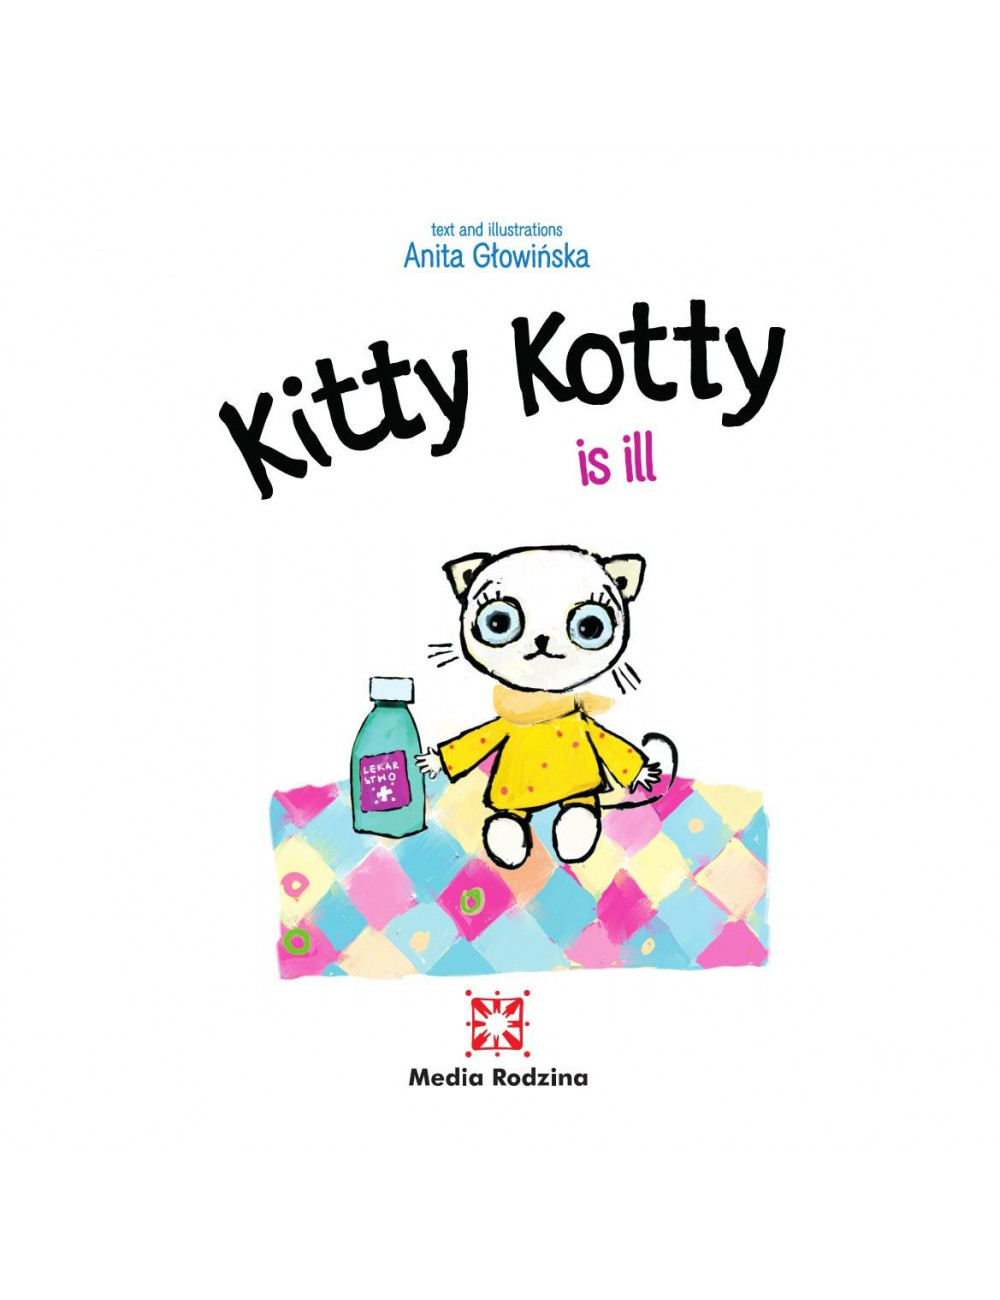 Kitty Kotty is ill, Media...